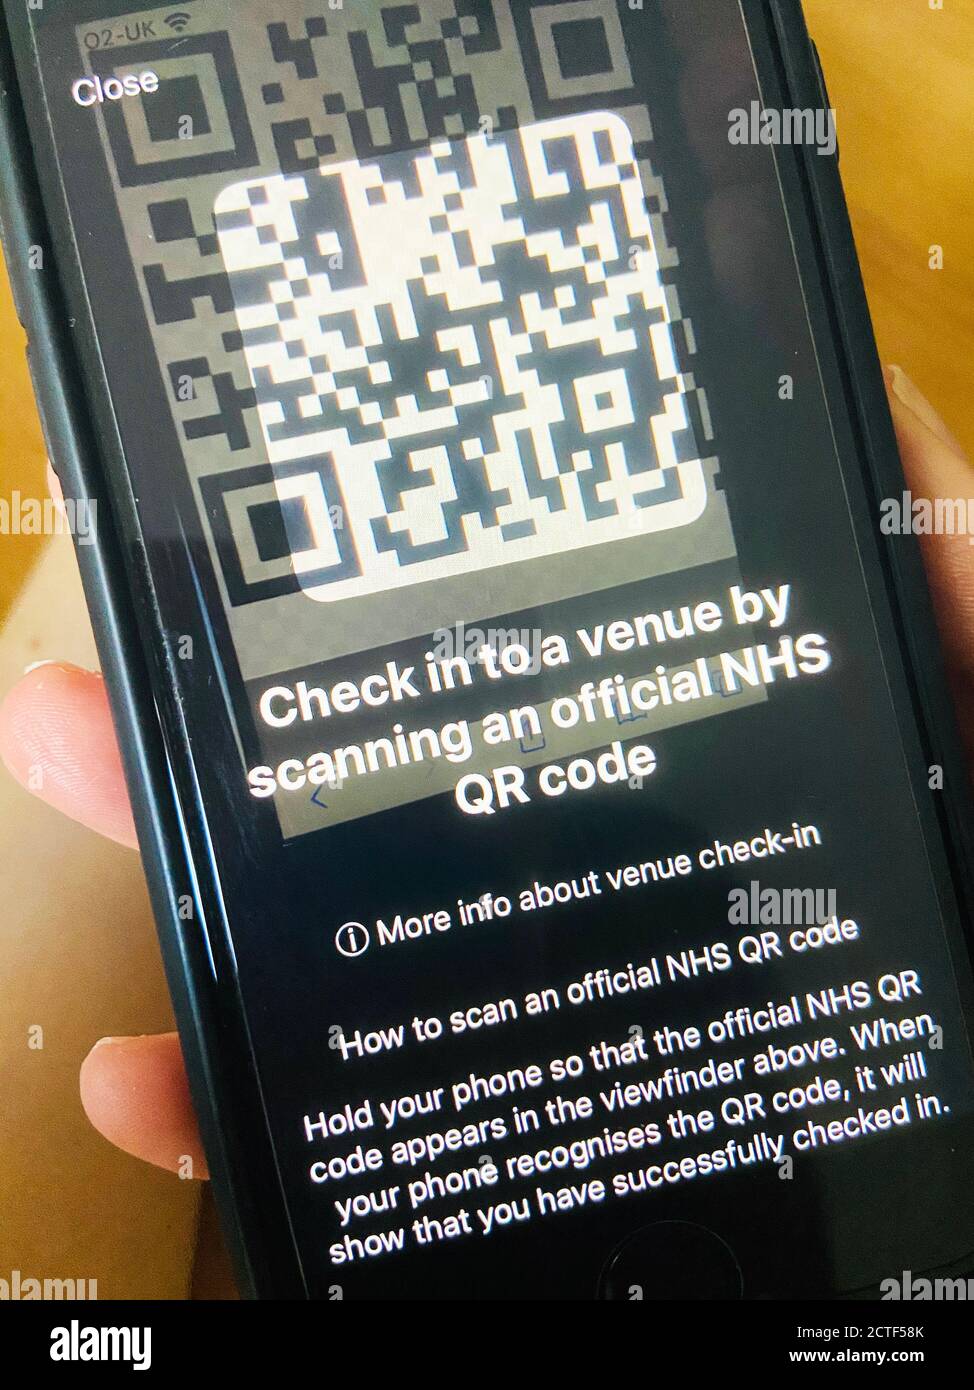 Eine Person, die die NHS Covid-19-App nutzt, die am Donnerstag in England und Wales veröffentlicht wird, um die NHS-Test- und Trace-Bemühungen zu unterstützen, nach monatelangen Verzögerungen, technischen Problemen und Datenschutzproblemen. Stockfoto